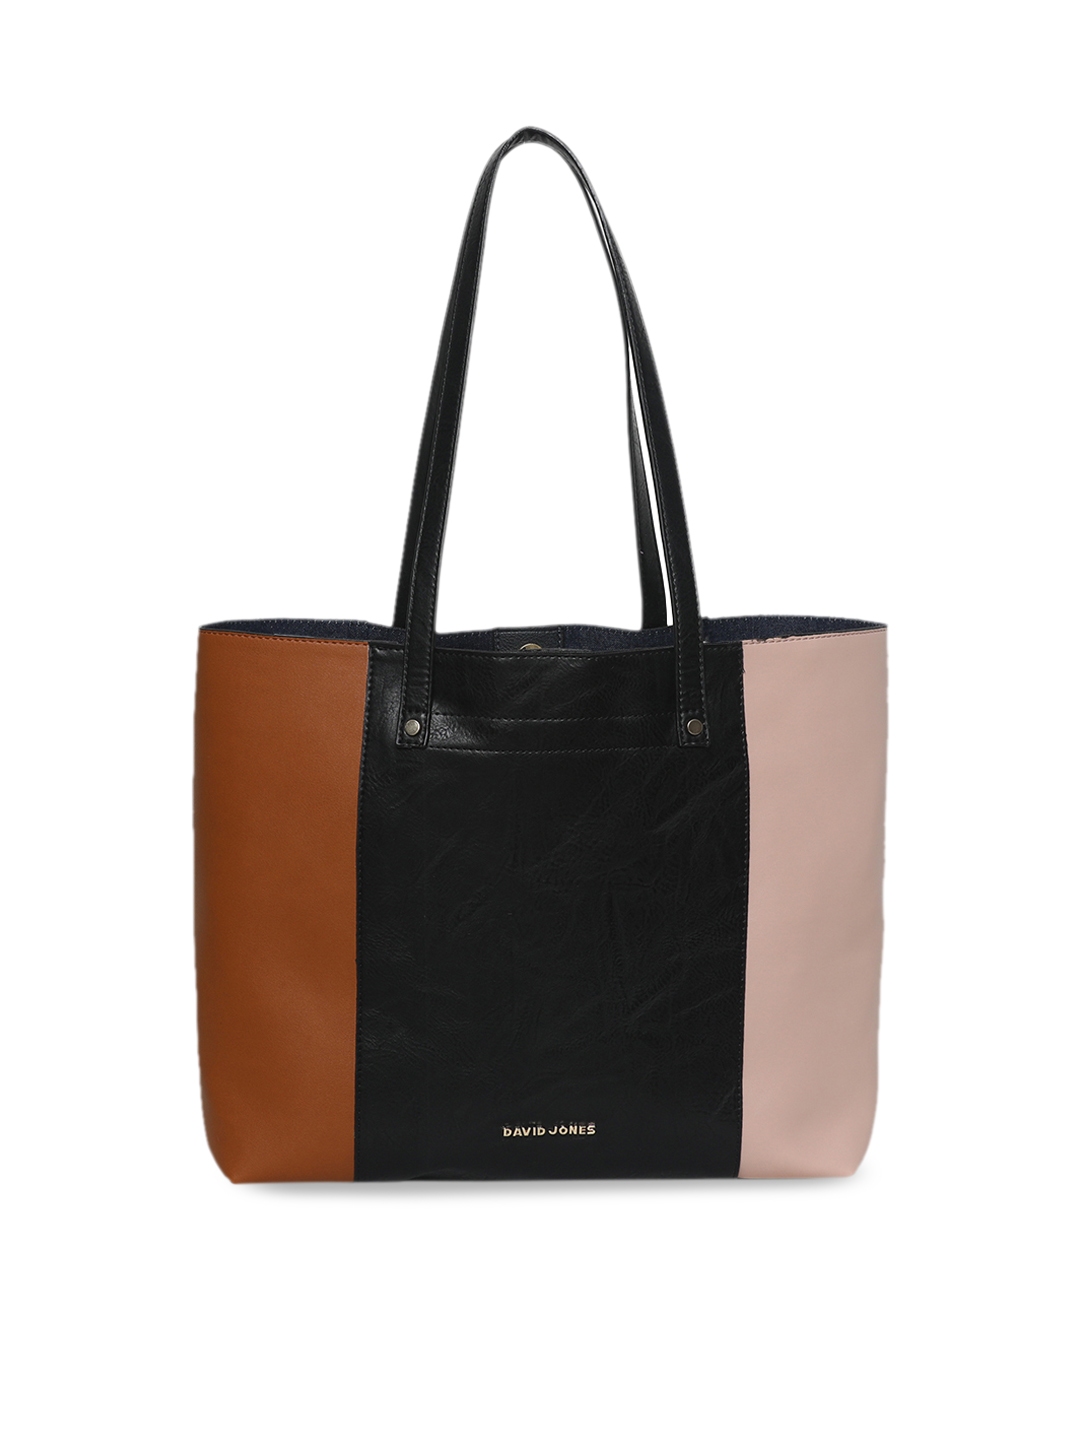 Buy David Jones Tan Brown & Black Colourblocked Tote Bag - Handbags for ...